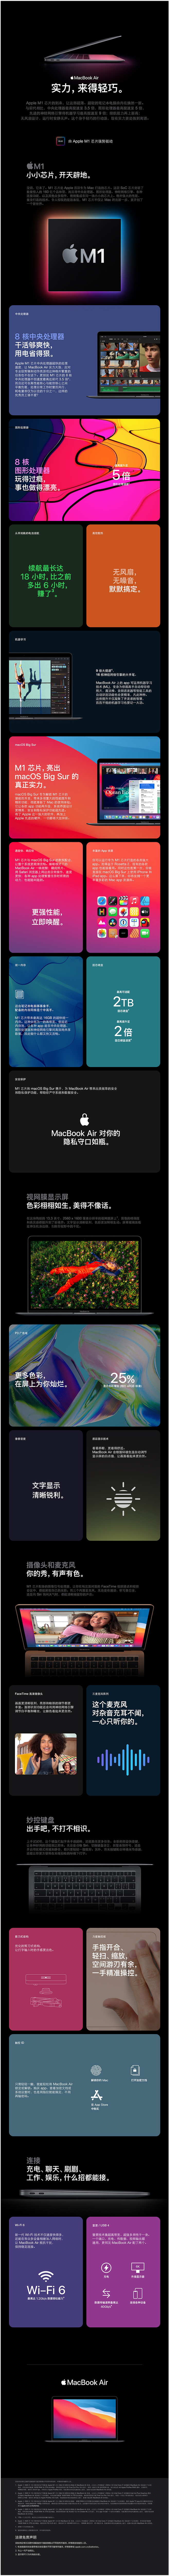 FireShot Capture 697 - 【AppleMacBook Air】Apple MacBook Air 13.3 8核M1芯片(7核图形处理器) 8G 256G SSD _ - item.jd.com.png